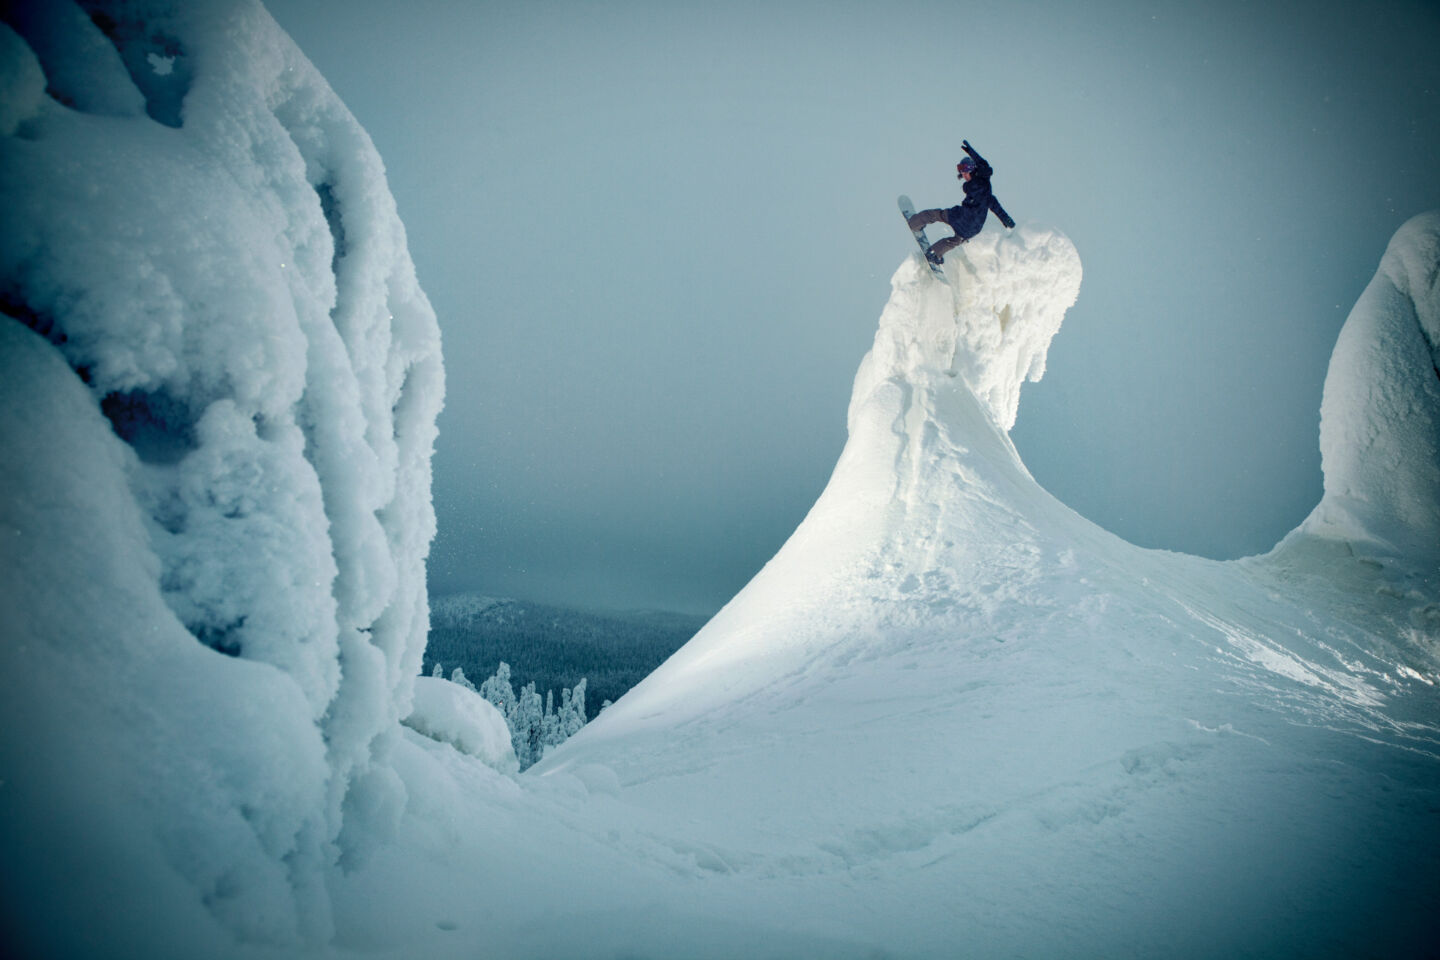 Snowboarding in Ruka-Kuusamo, Finland